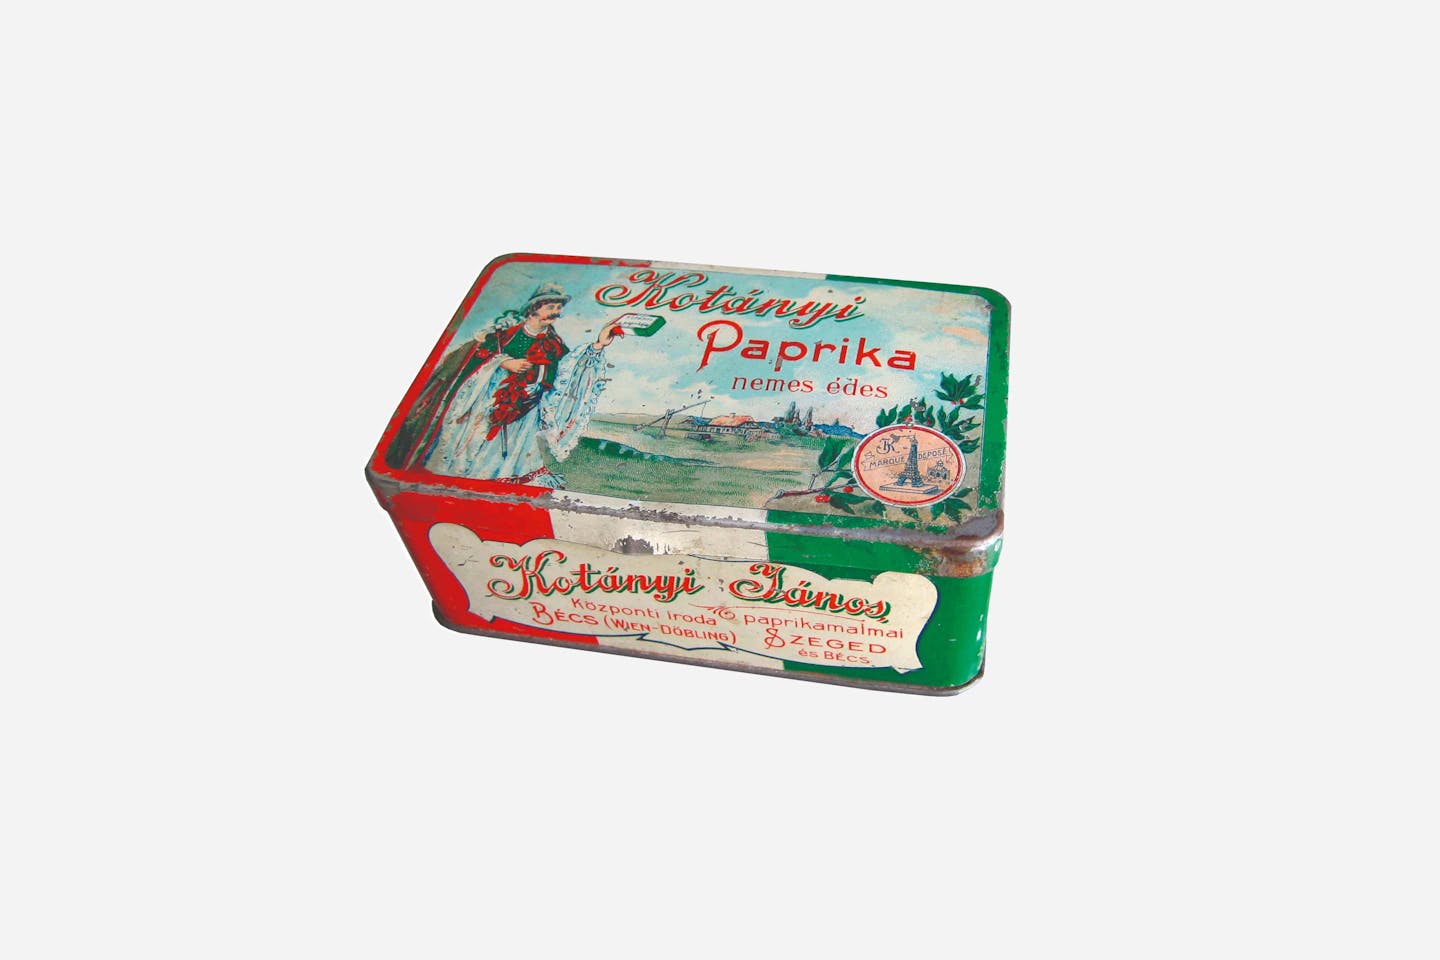 Kotányi fűszerpaprika csomagolása, 1900